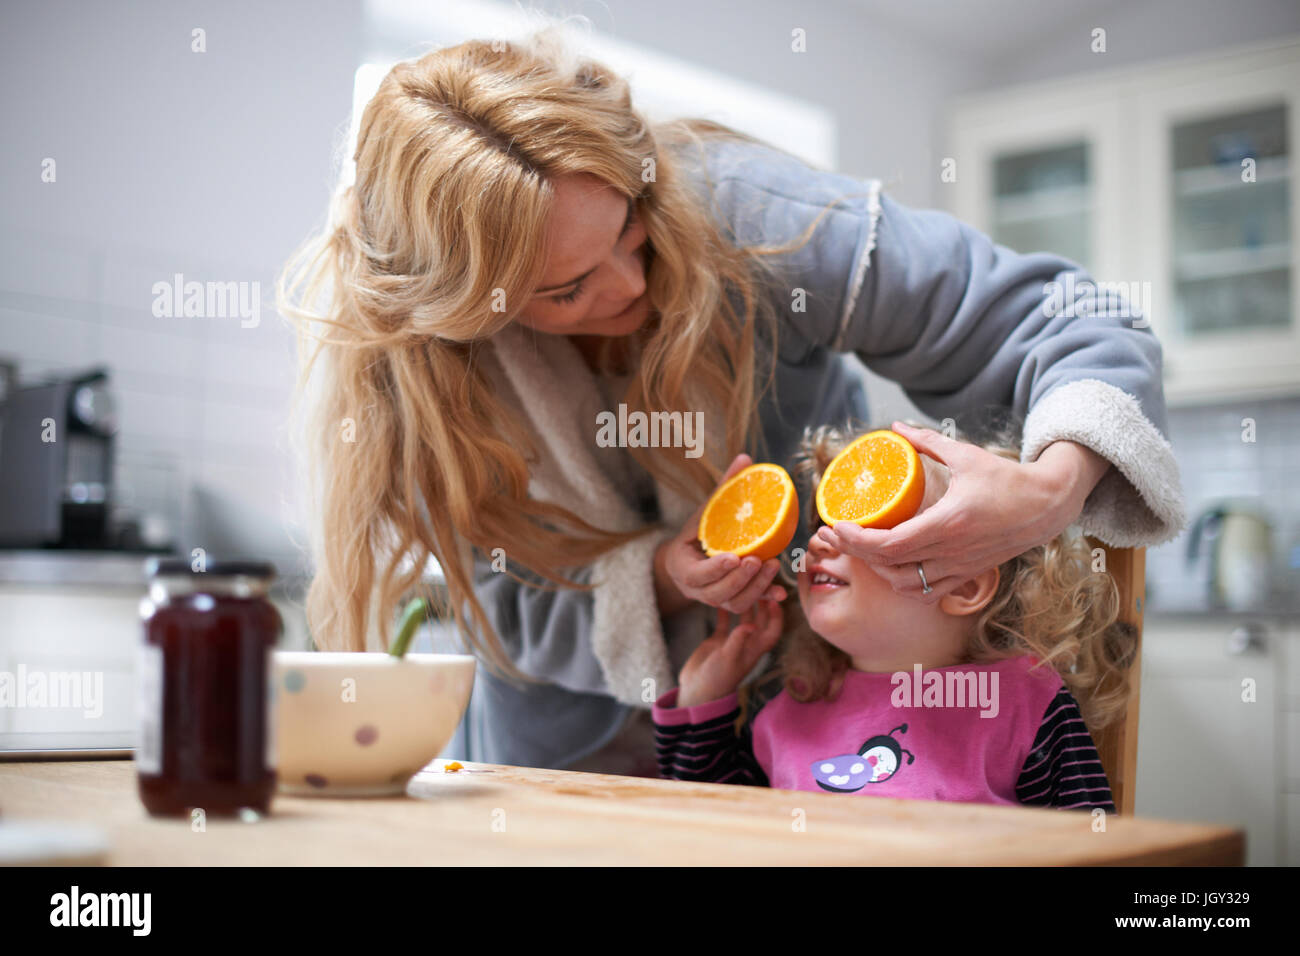 Junges Mädchen saß am Küchentisch, Mutter mit halbierten Orange vor Augen der Tochter Stockfoto